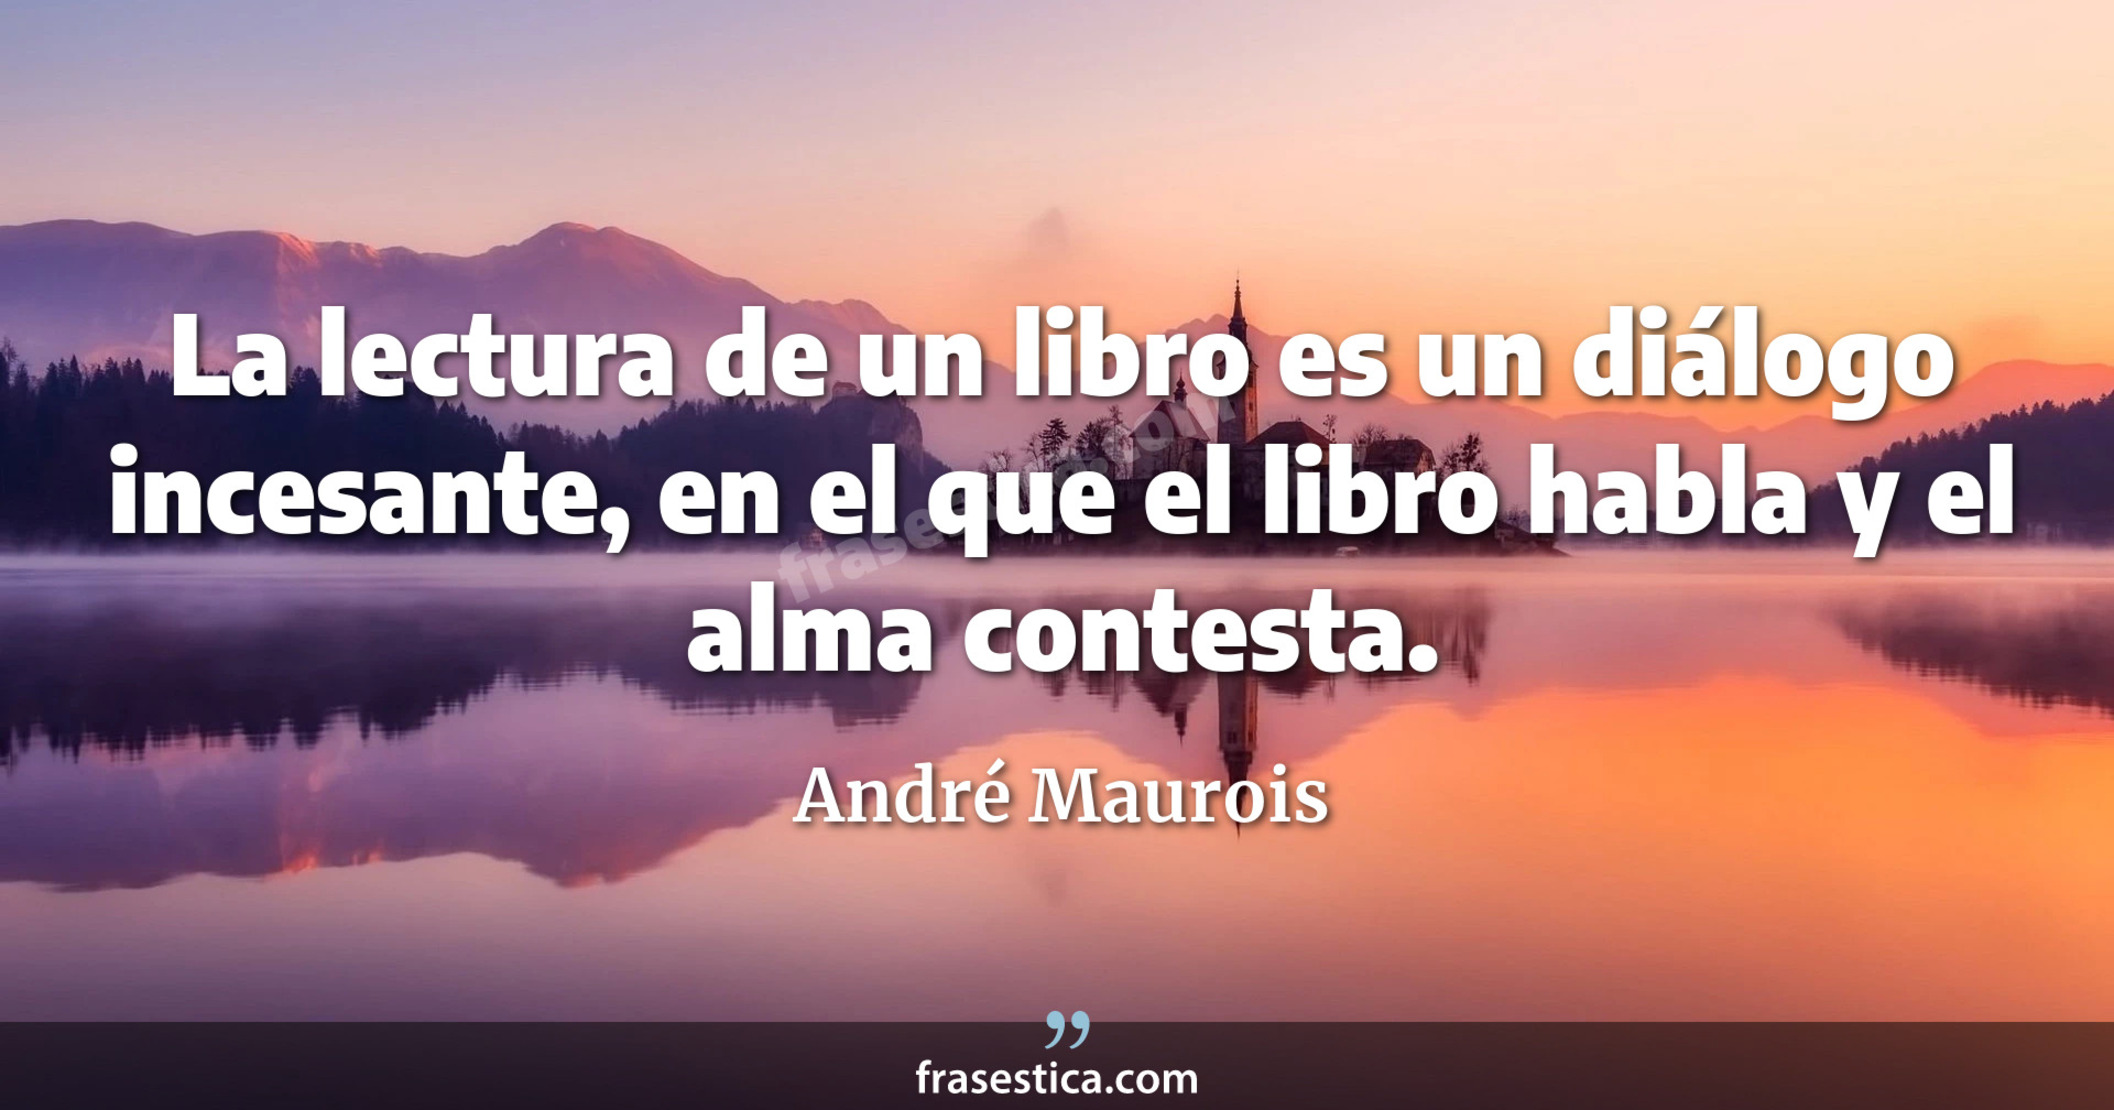 La lectura de un libro es un diálogo incesante, en el que el libro habla y el alma contesta. - André Maurois